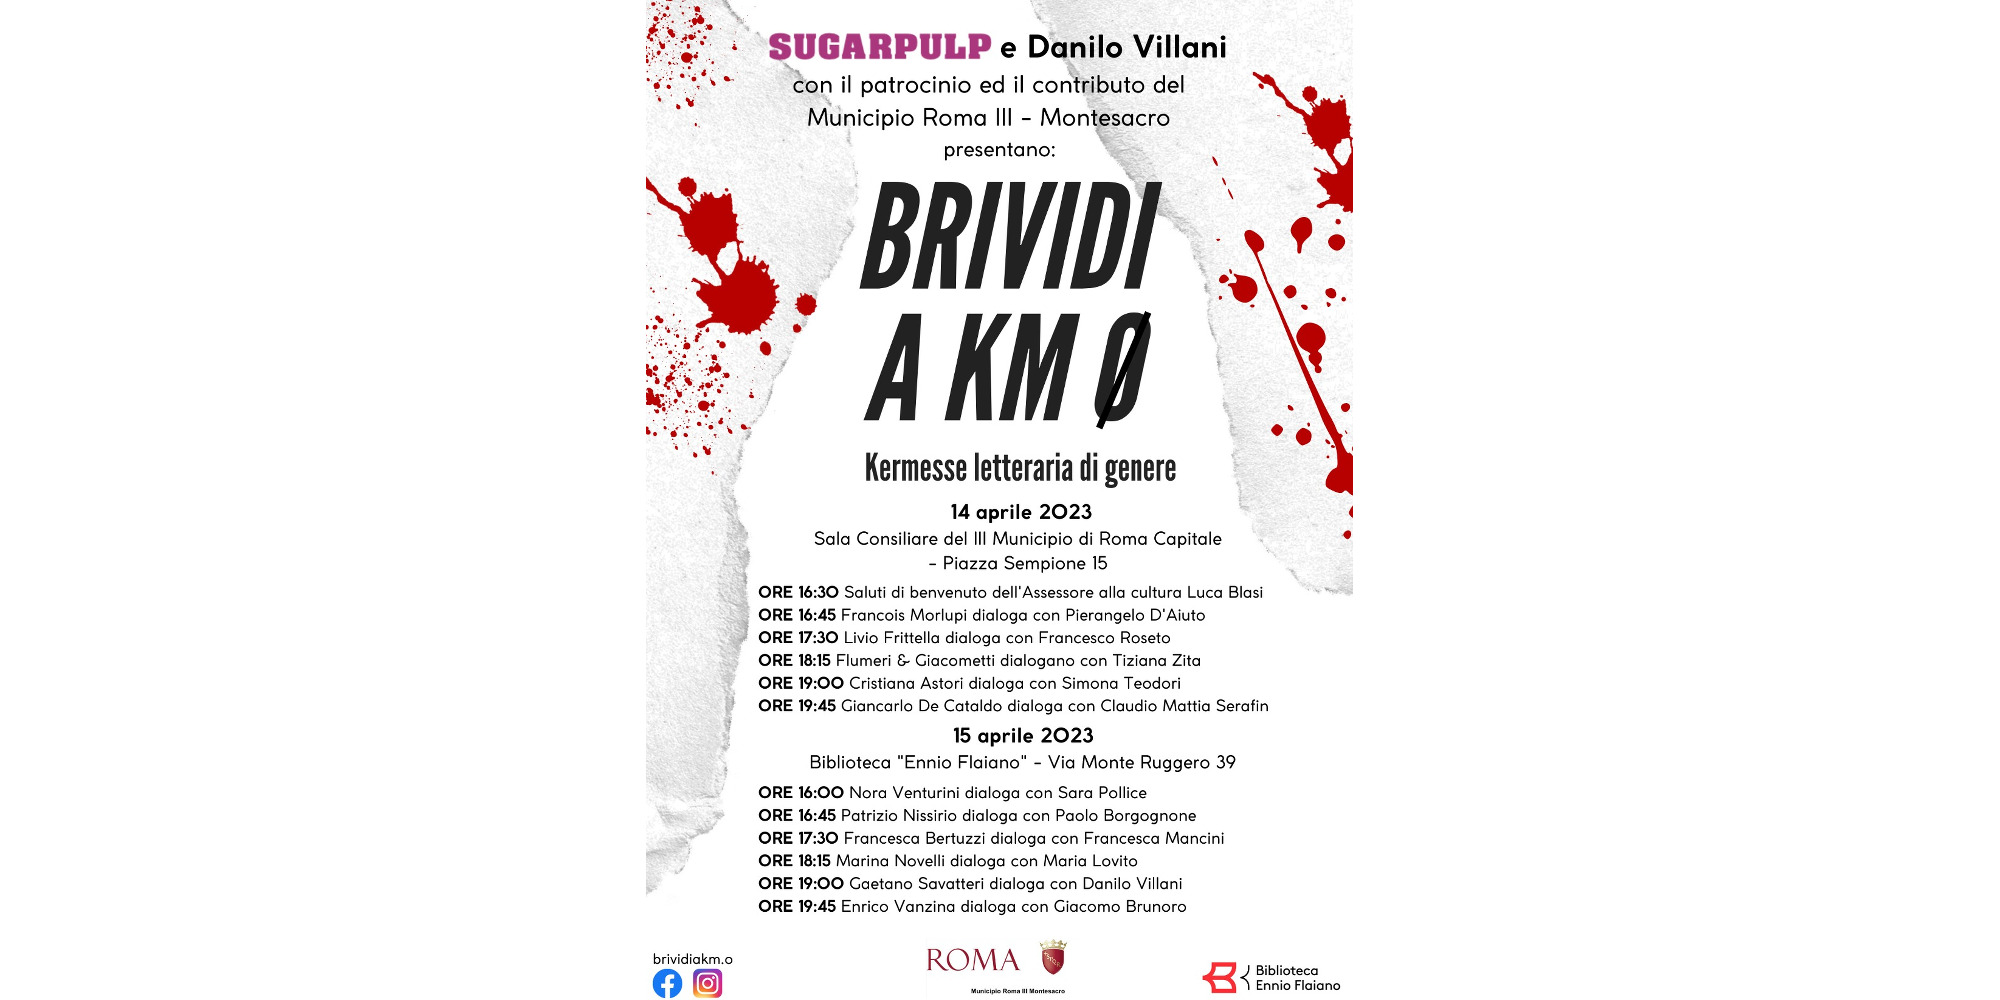 Il 14 e il 15 aprile debutta Brividi a Km0, la rassegna organizzata da Danilo Villani e Sugarpulp con Savatteri, De Cataldo, Bertuzzi, Vanzina, Venturini, Frittella, Astori, Novelli e tanti altri.